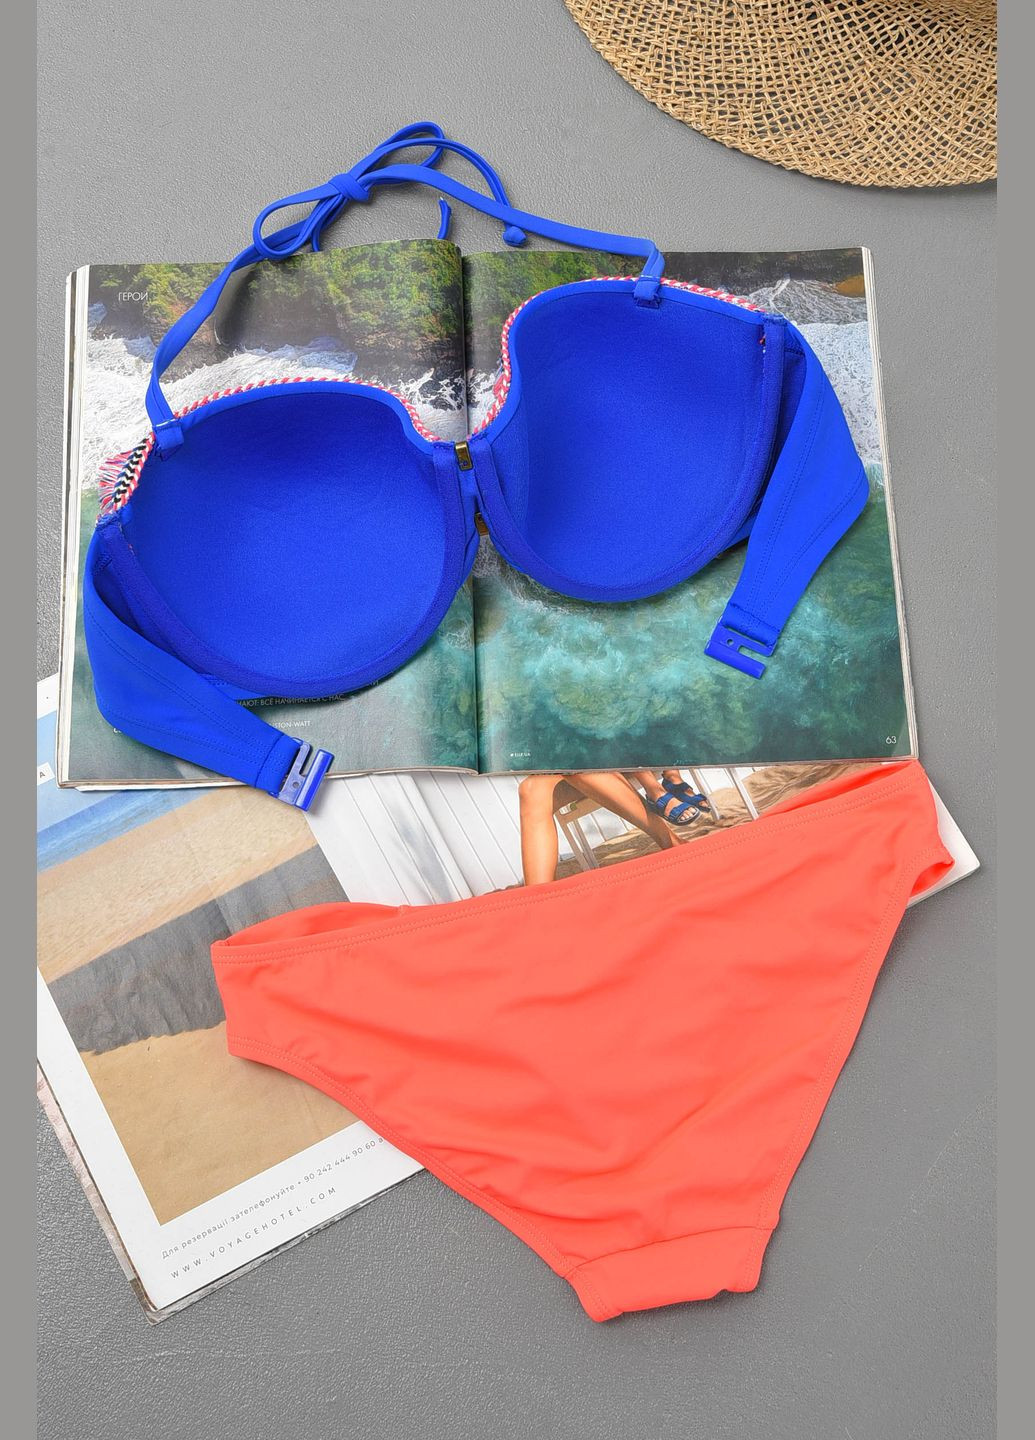 Коралловый летний купальник женский сине-оранжевого цвета чашка с бикини Let's Shop